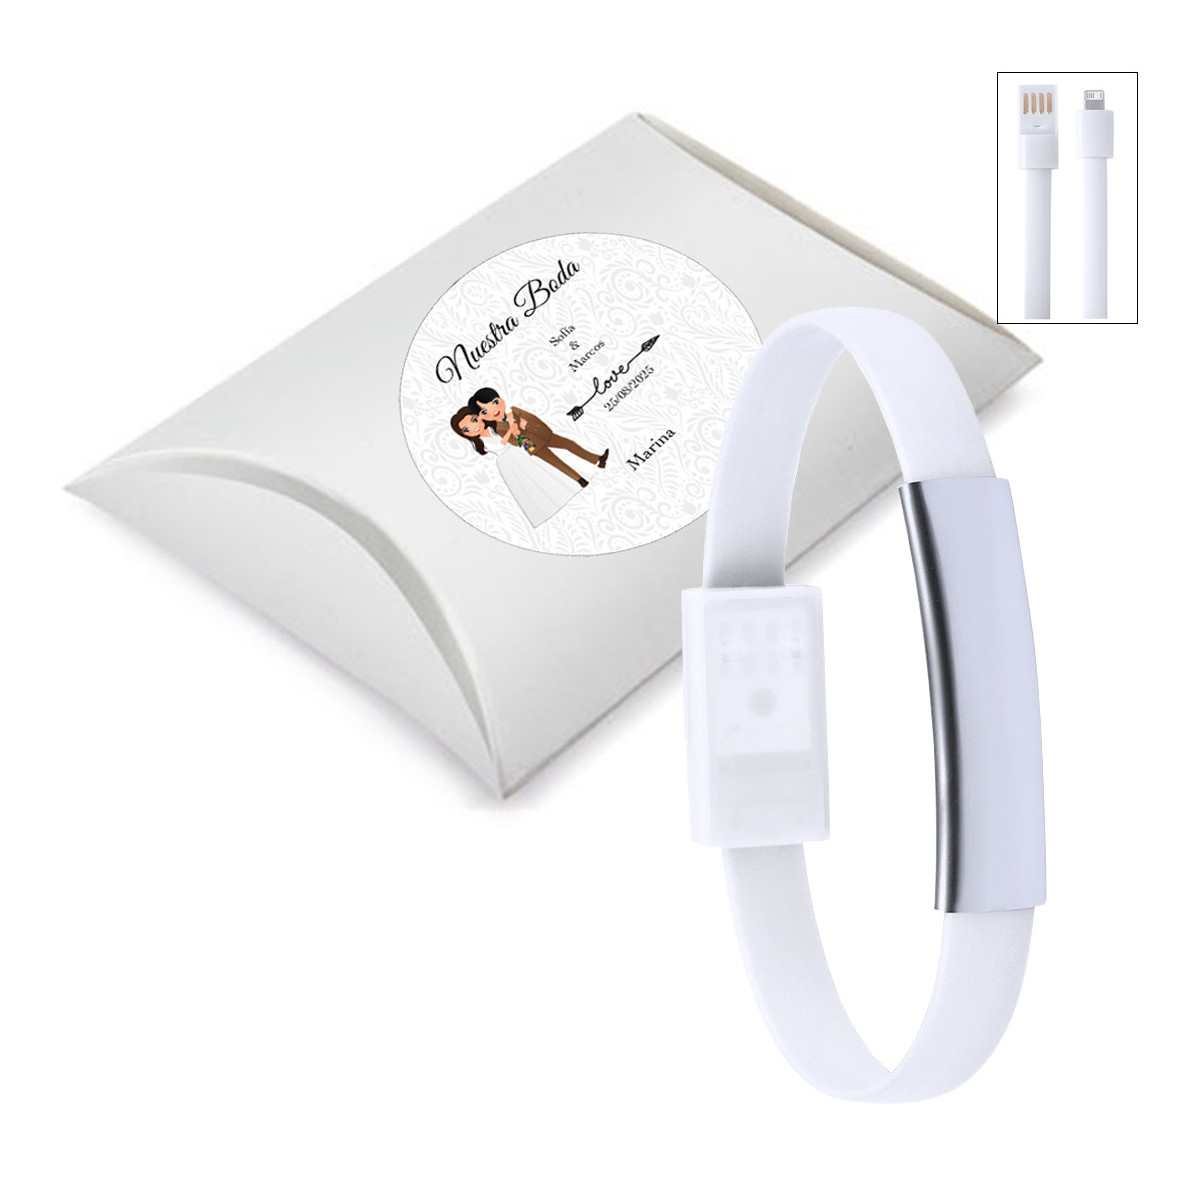 Pulsera cargador de móviles en color blanca presentada en caja plateada y adhesivo personalizado para bodas